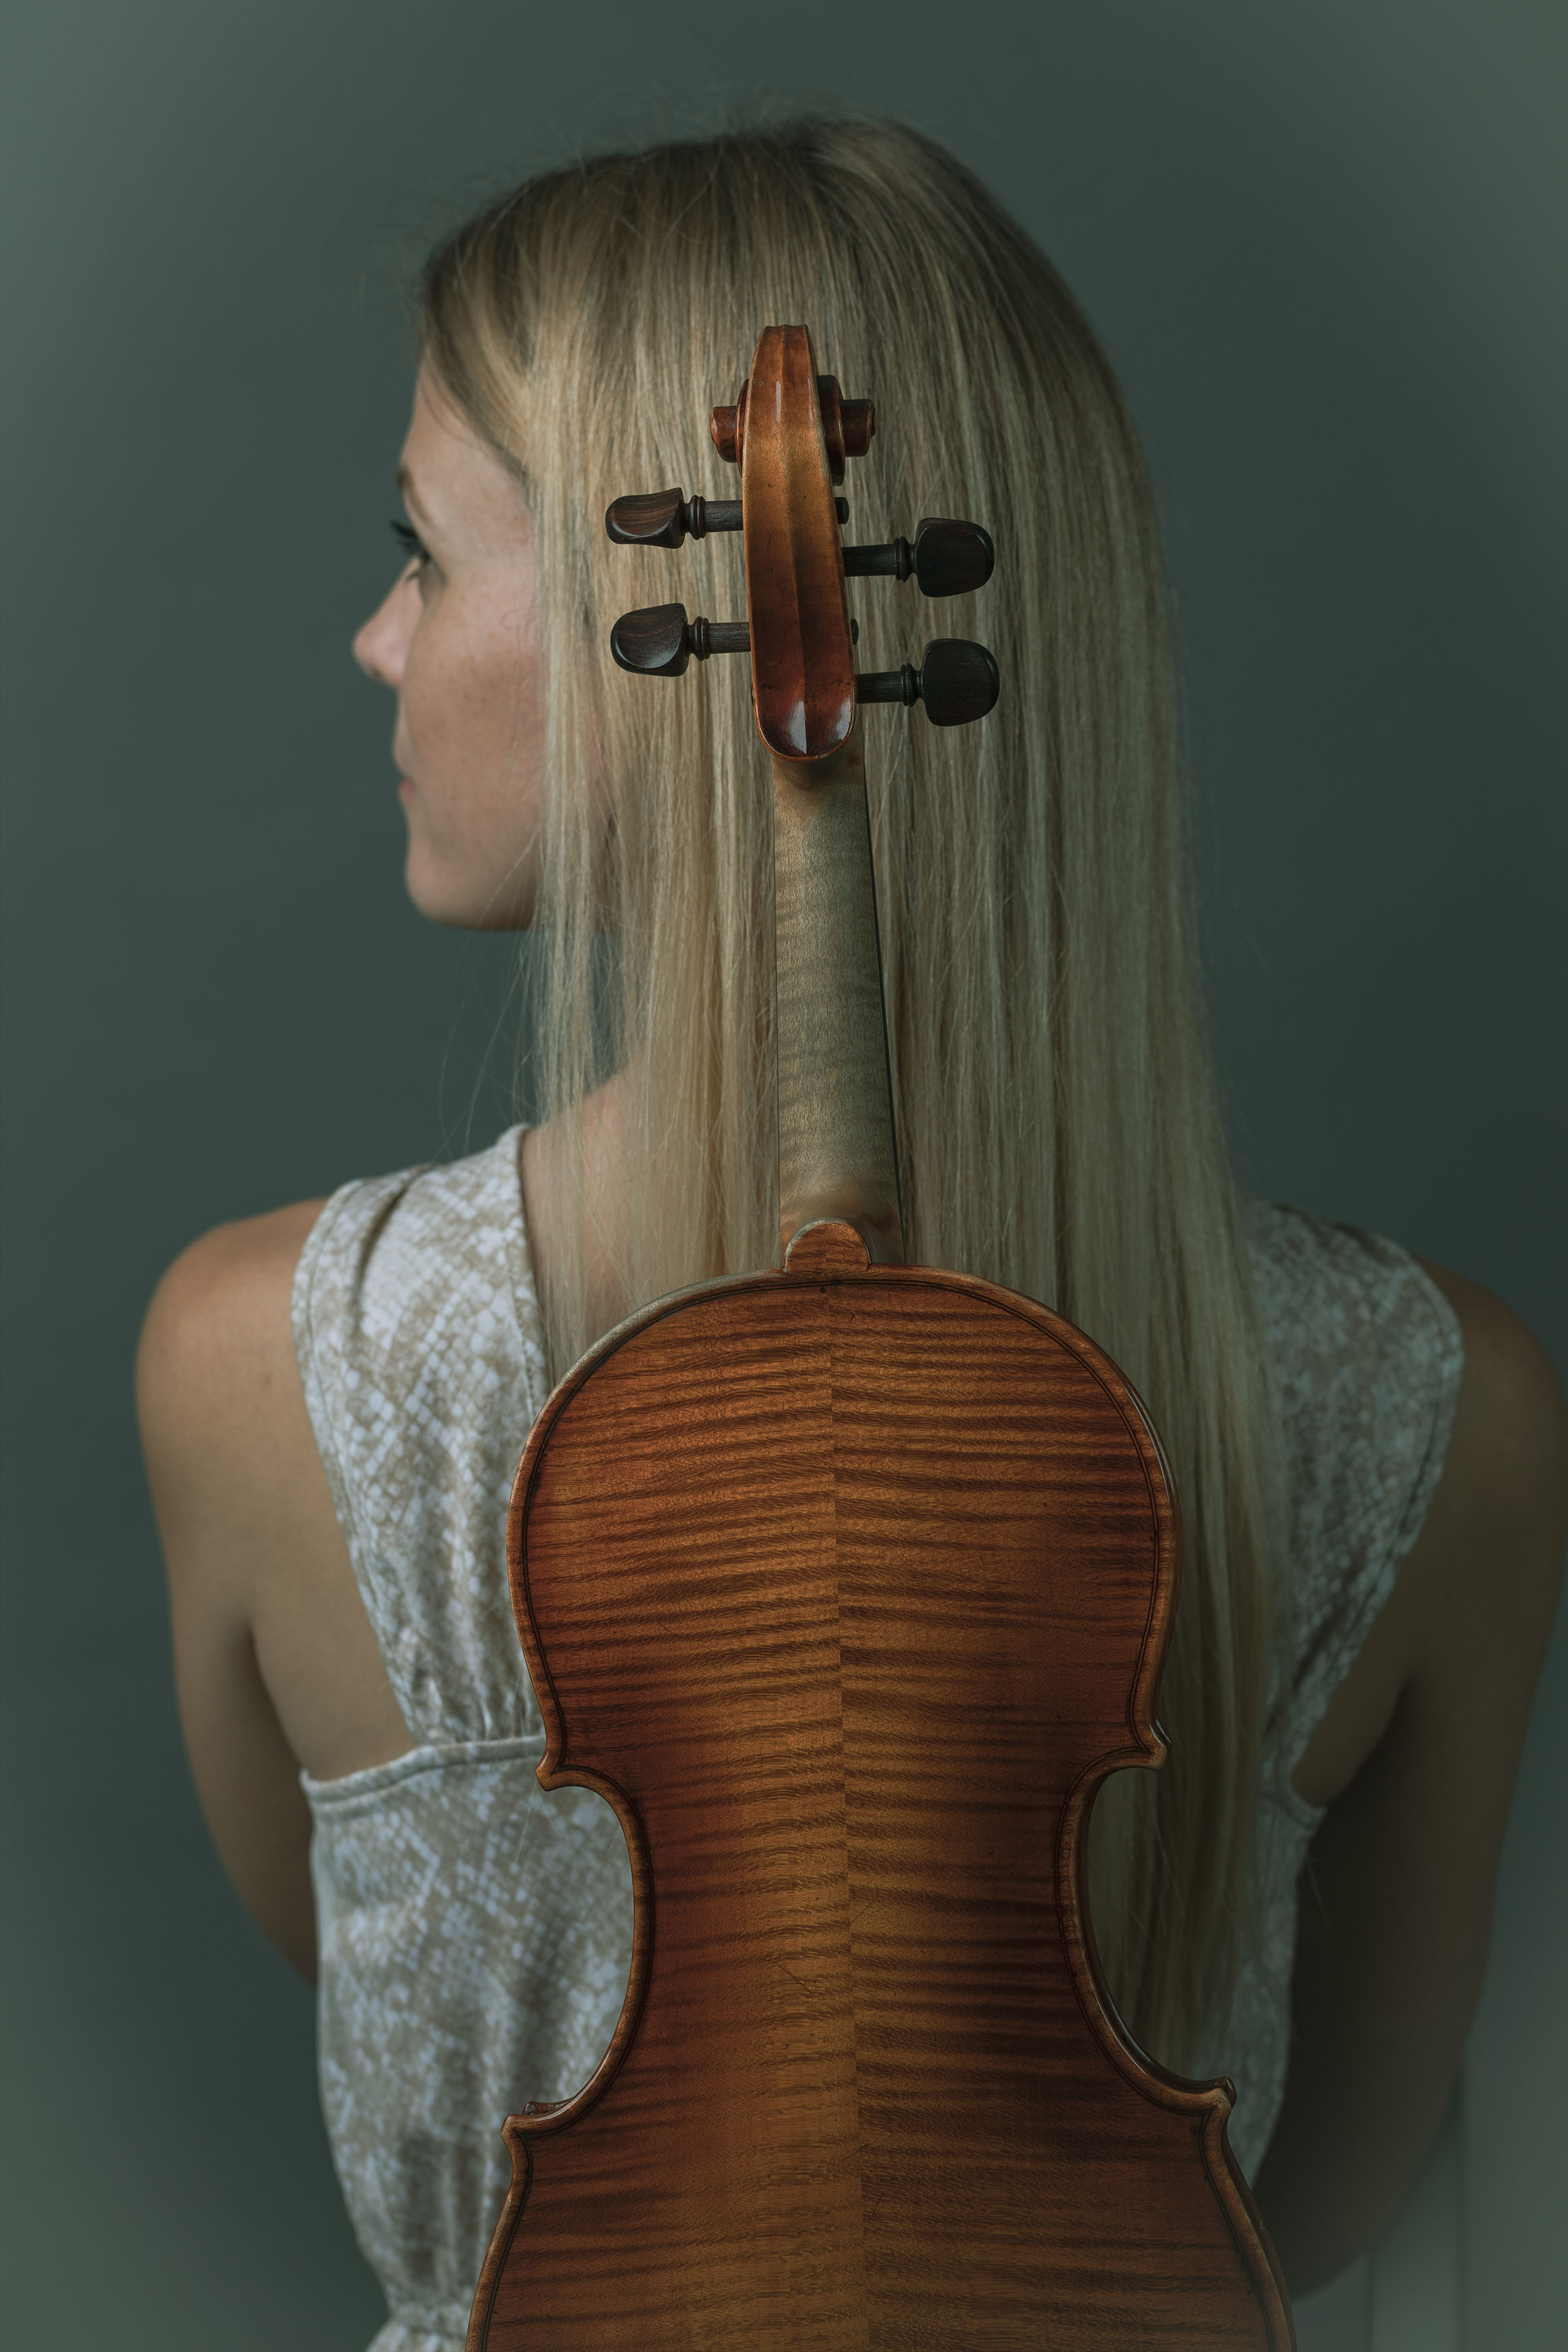 Geigerin mit einer Geige im Rücken